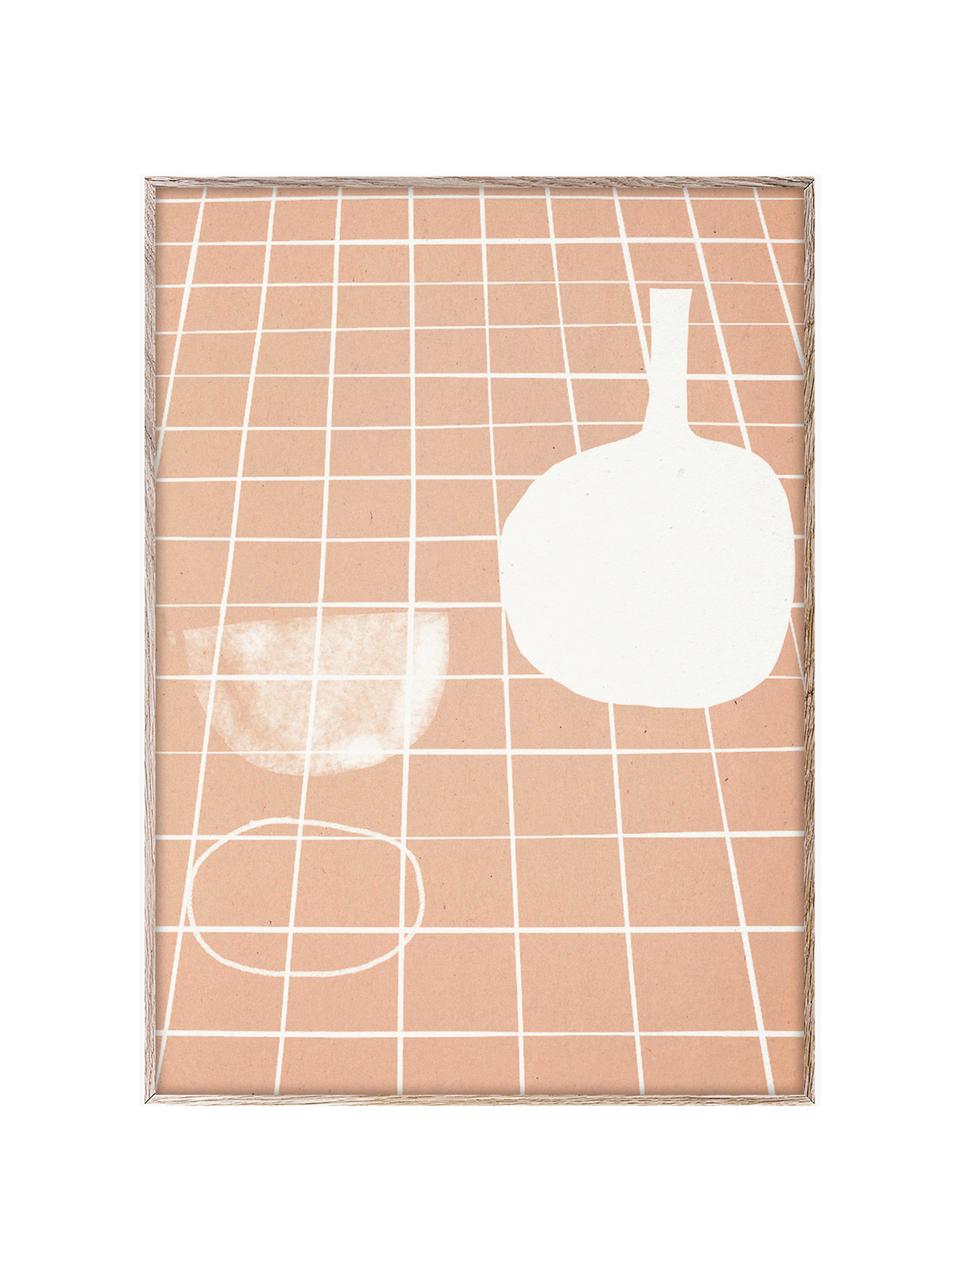 Plagát SDO 07, 210 g matný papier Hahnemühle, digitálna tlač s 10 farbami odolnými voči UV žiareniu, Marhuľová, lomená biela, Š 30 x V 40 cm